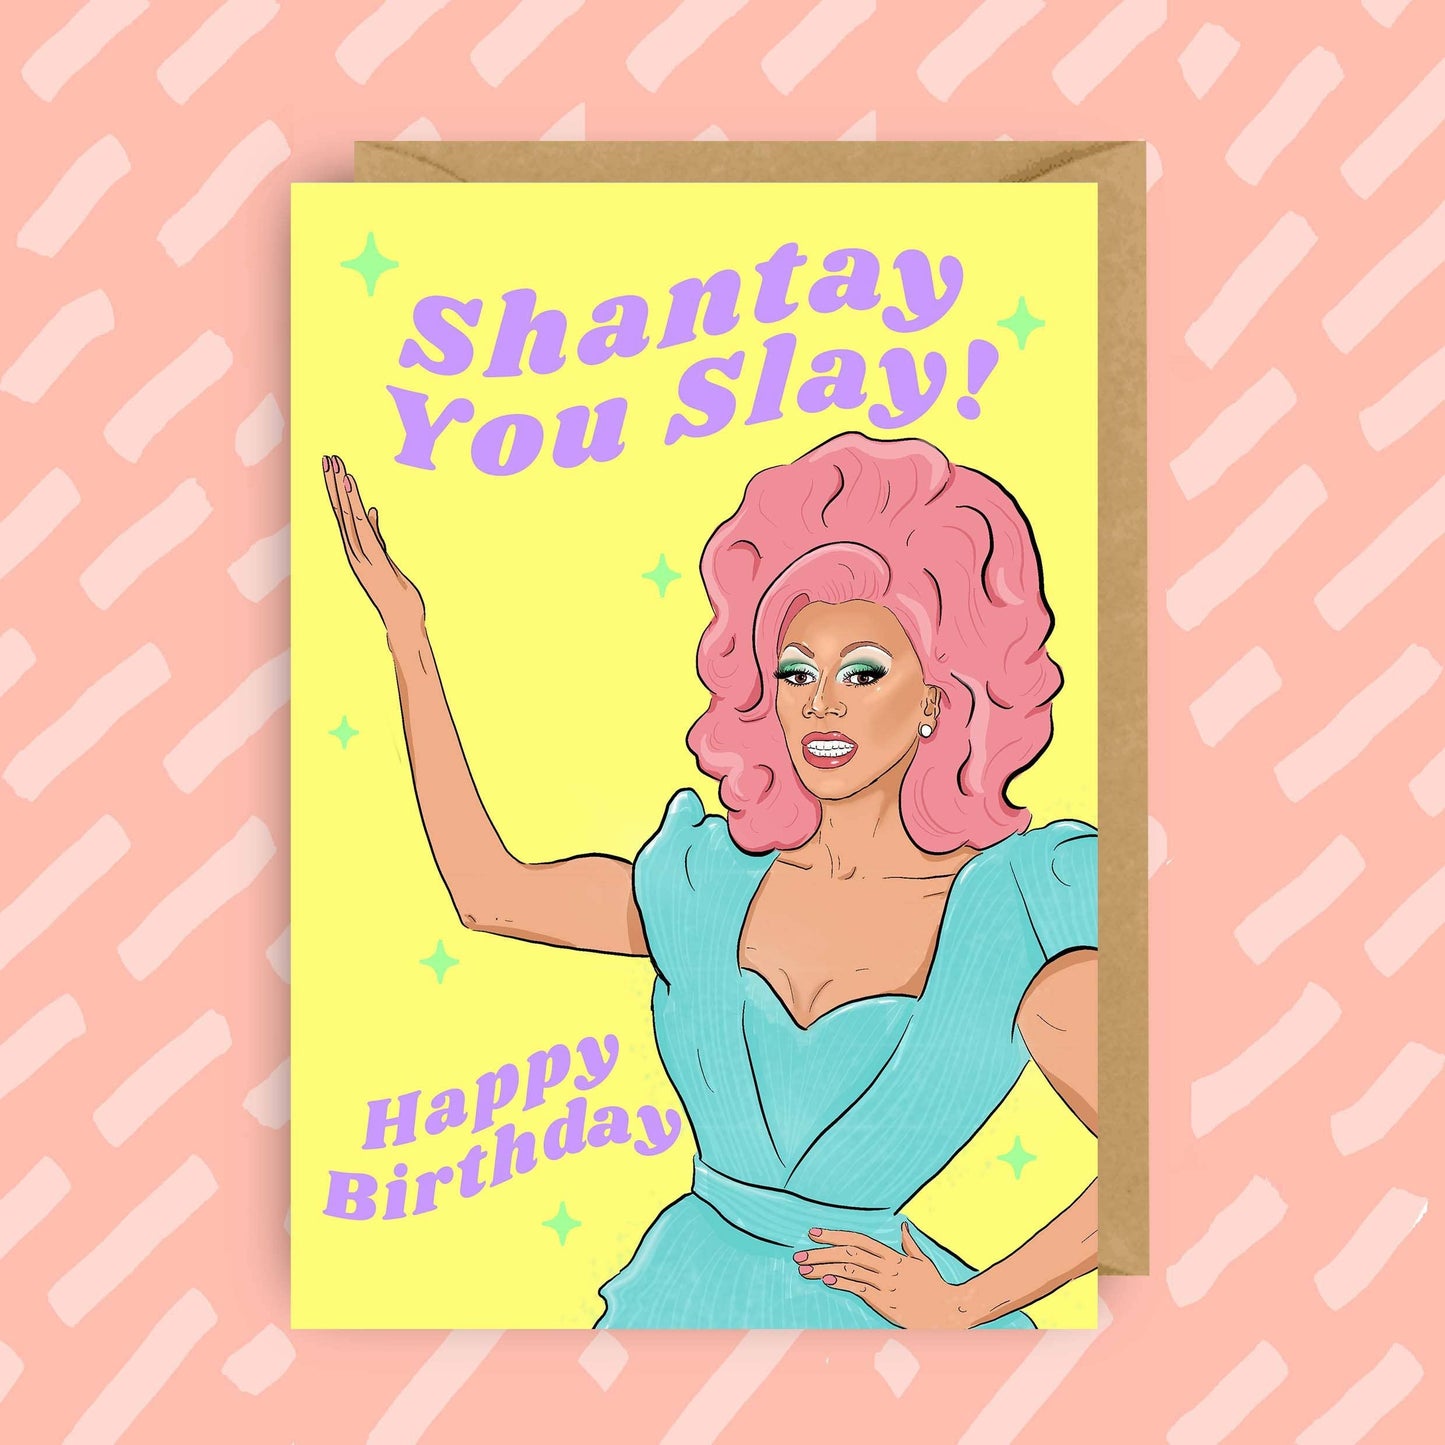 RuPaul "Shantay You Slay" Birthday Card - Drag Race